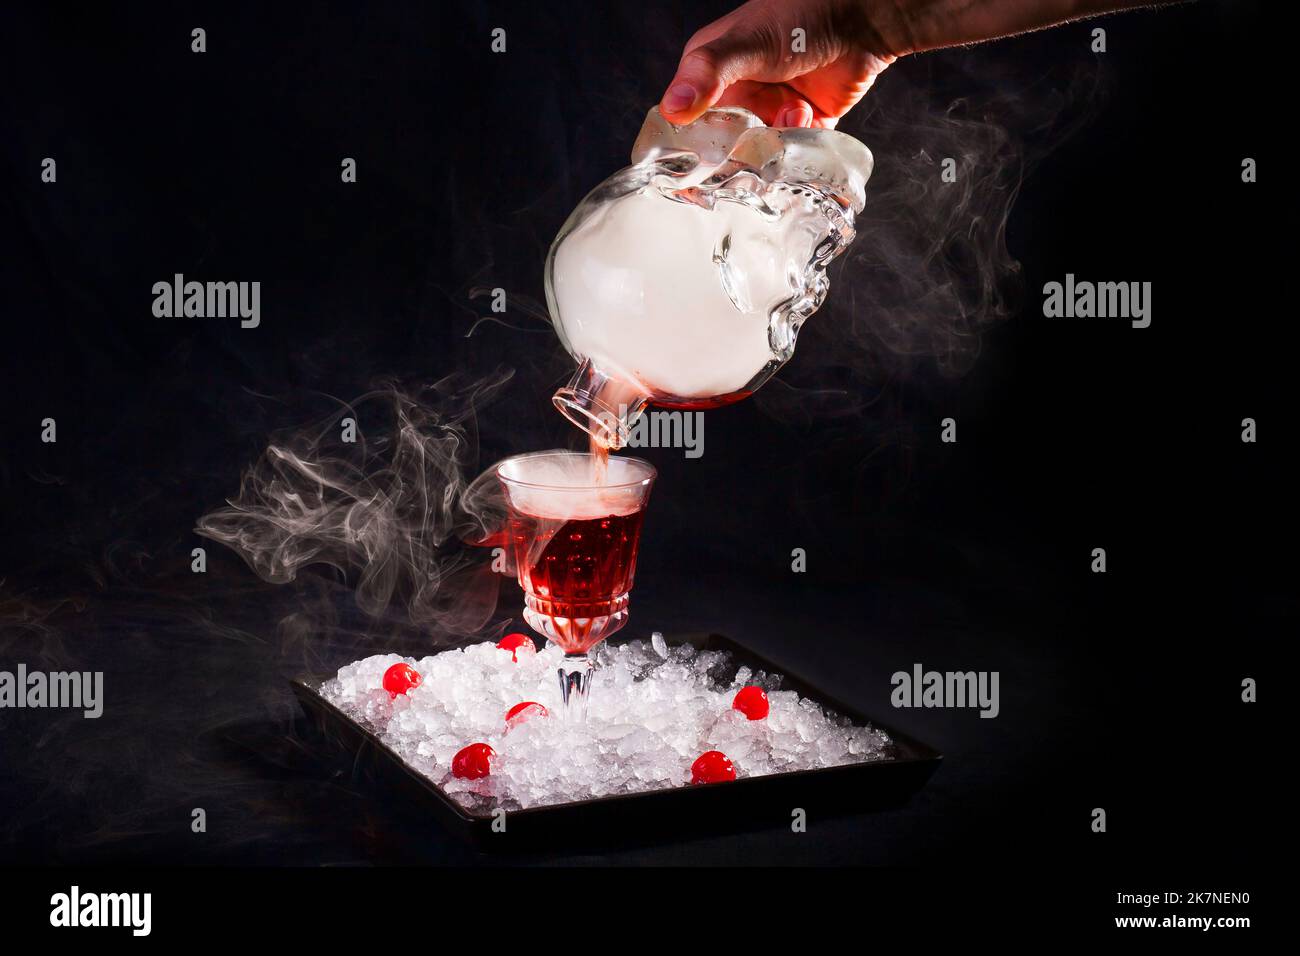 Il barista versa un cocktail alcolico affumicato da una bottiglia a forma di cranio, che l'autore serve su un piatto con ghiaccio tritato e ciliegie. Foto Stock